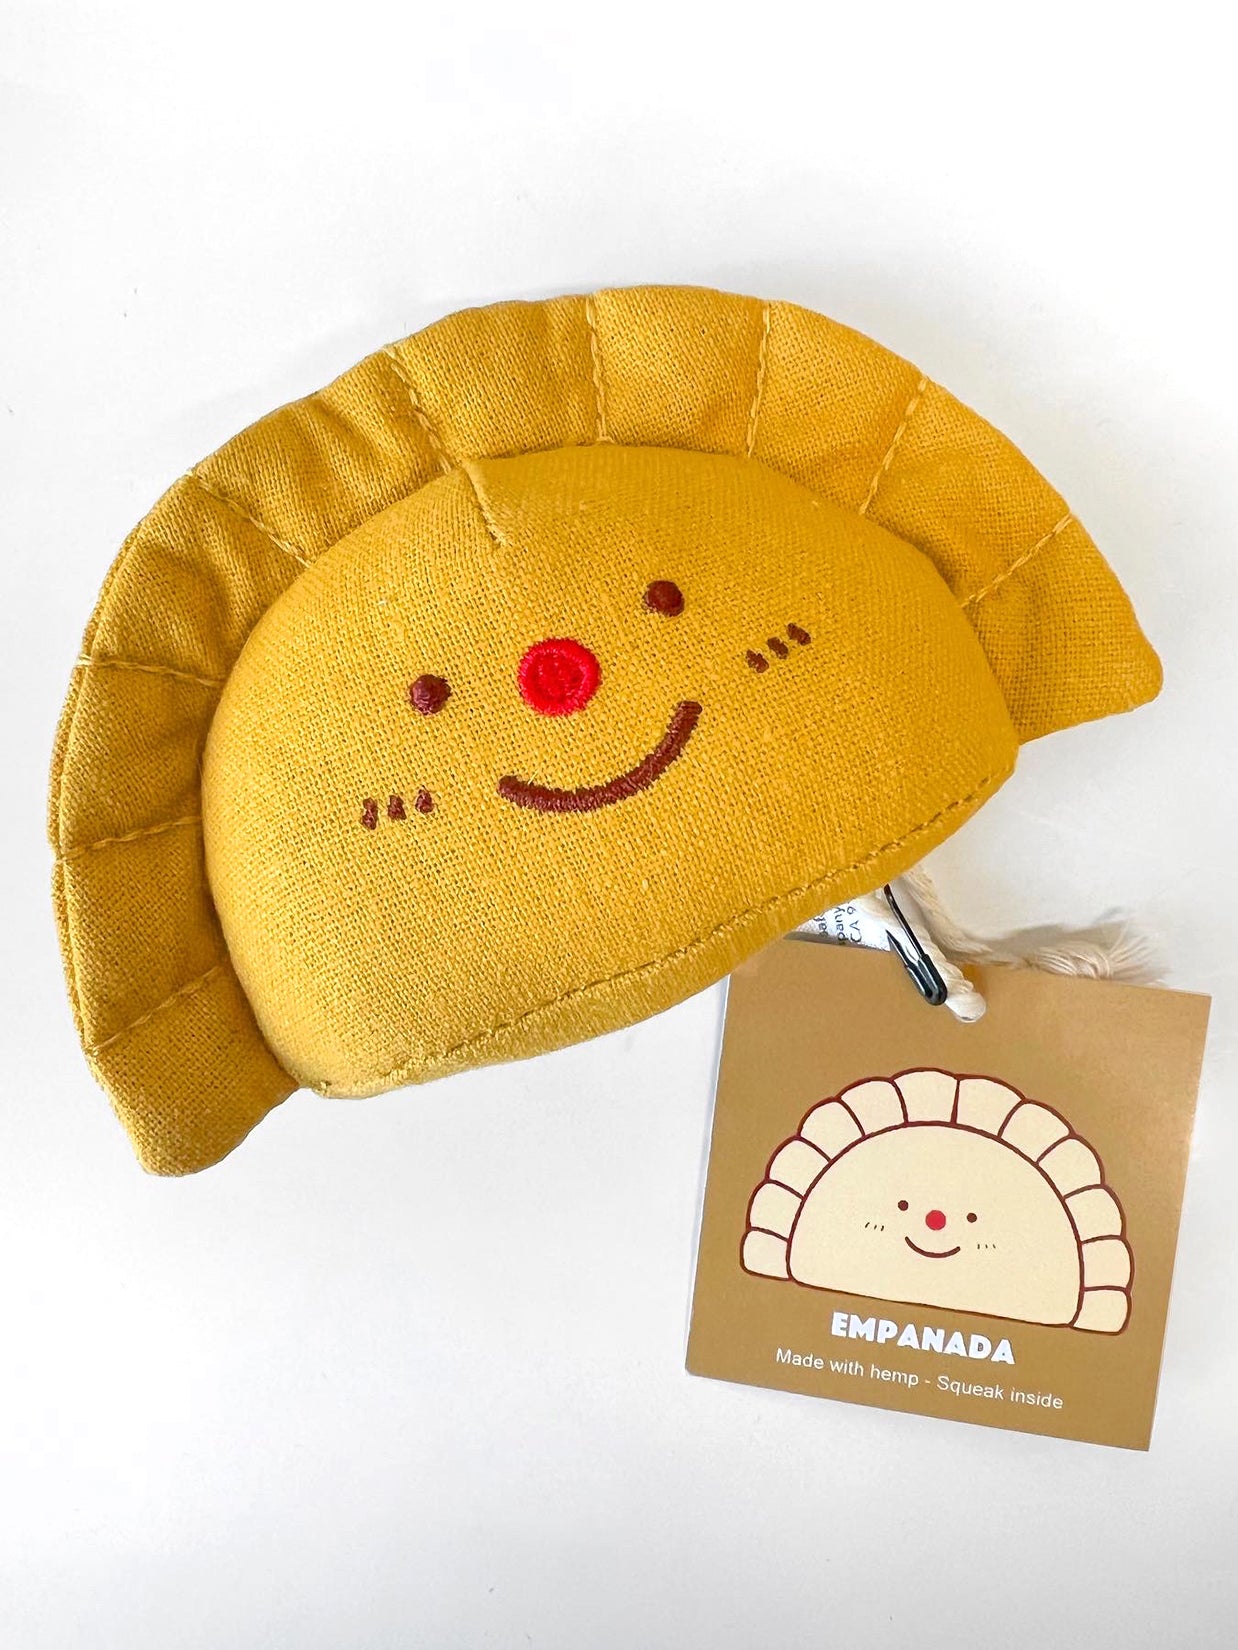 Natali Koromoto x Pawtas brand "Empanada" Squeaky Pet Toy